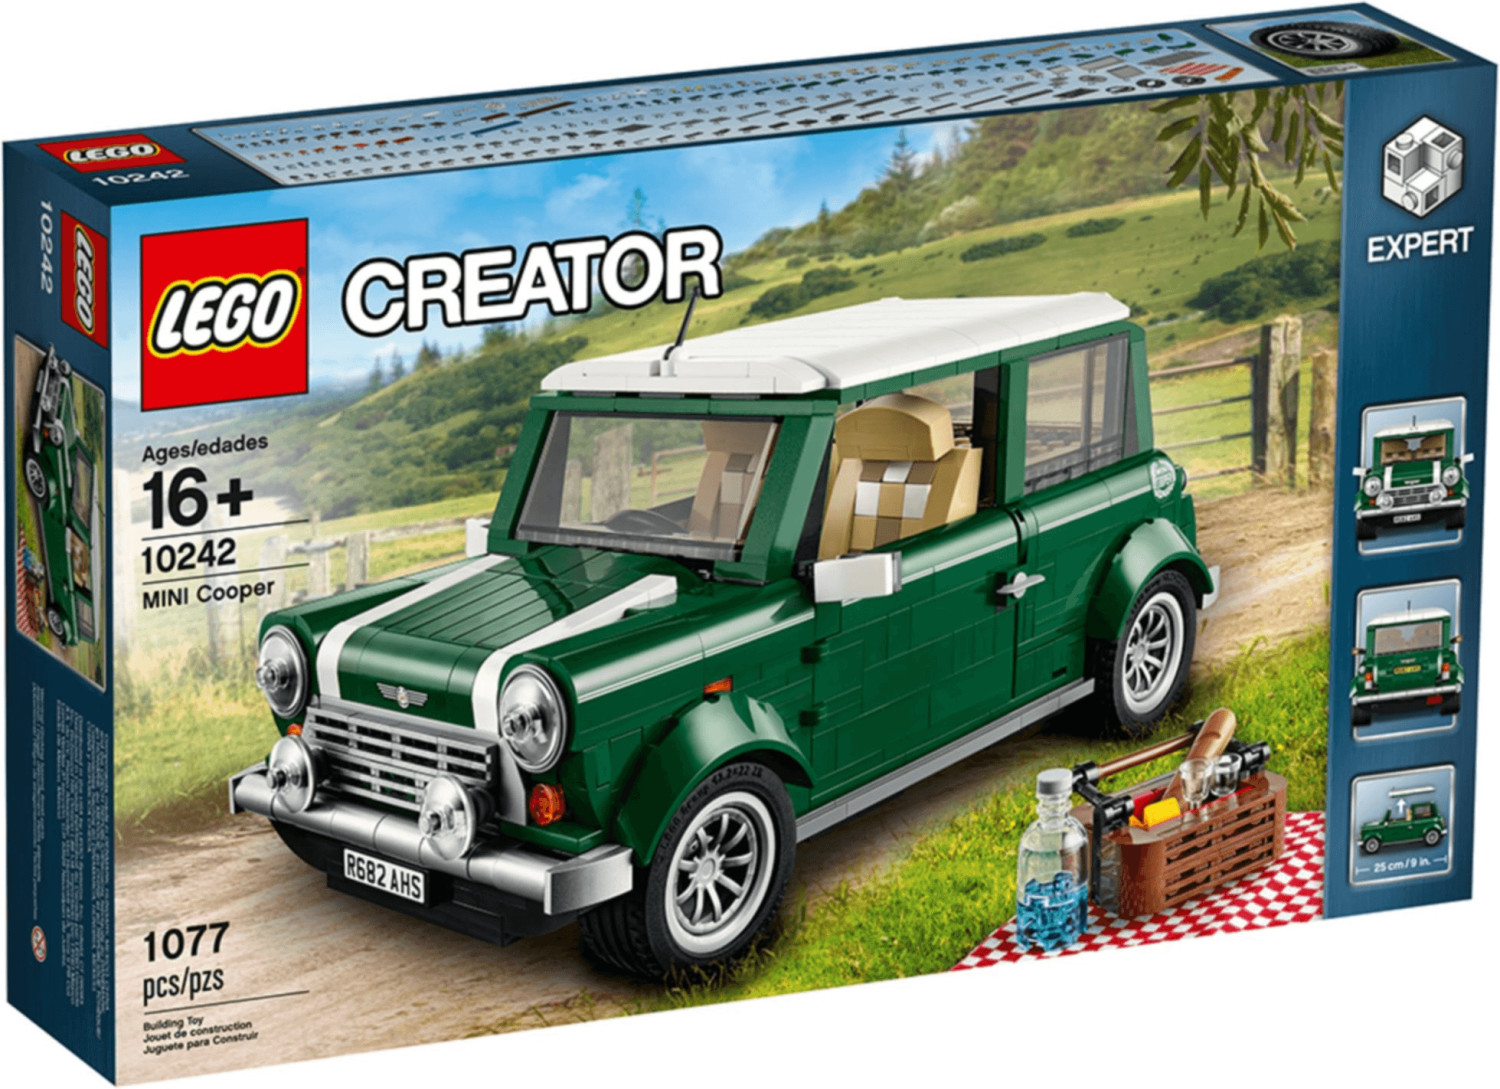 Slika za LEGO Creator - Mini Cooper 10242